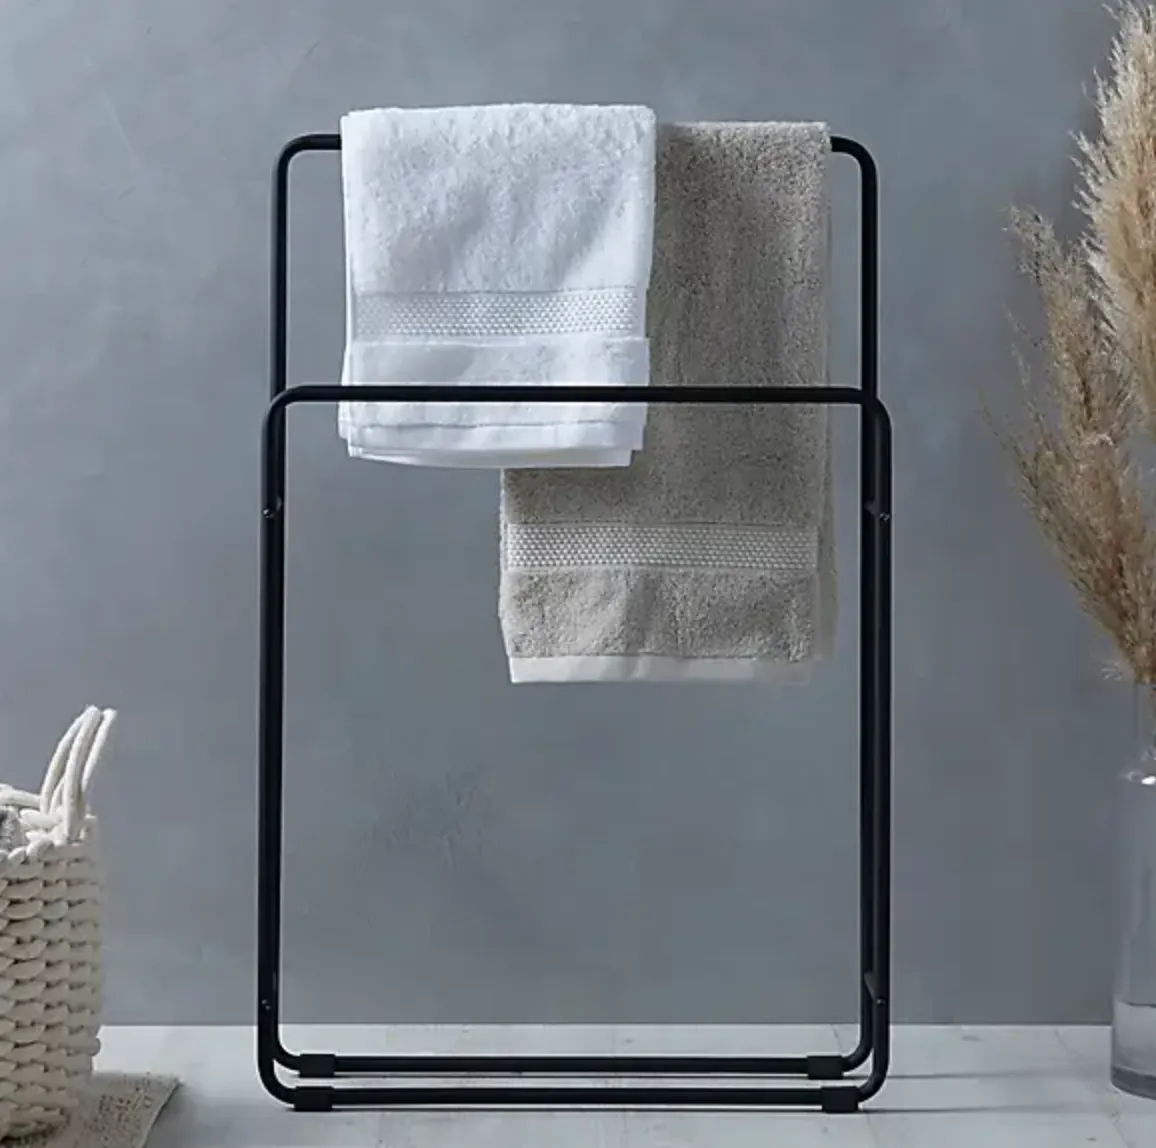 Towel storage ideas - freestanding towel rack